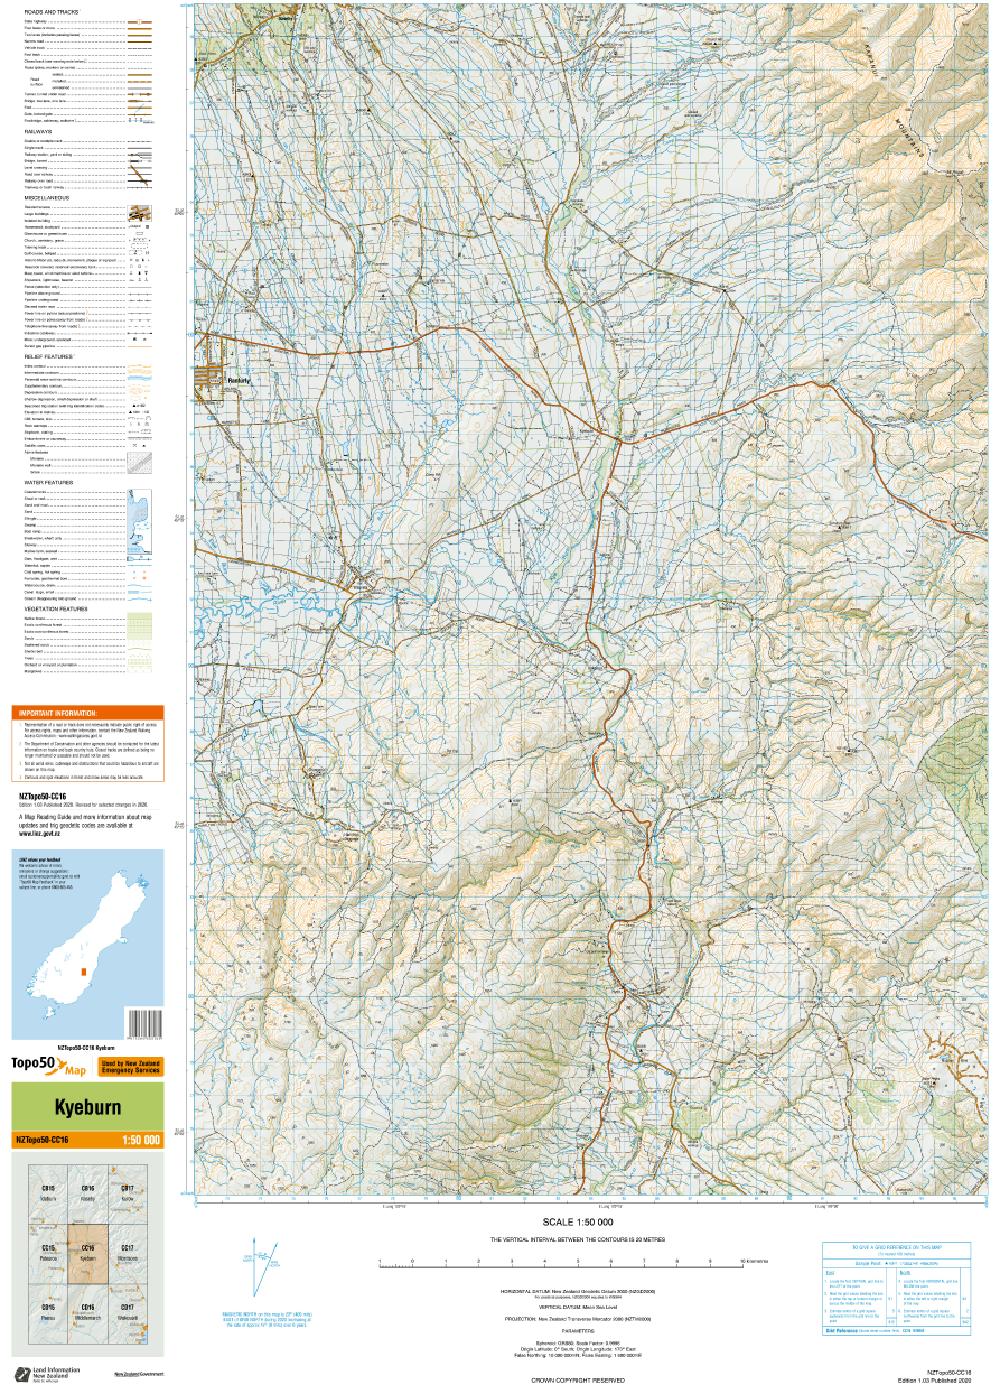 Topo map of Kyeburn